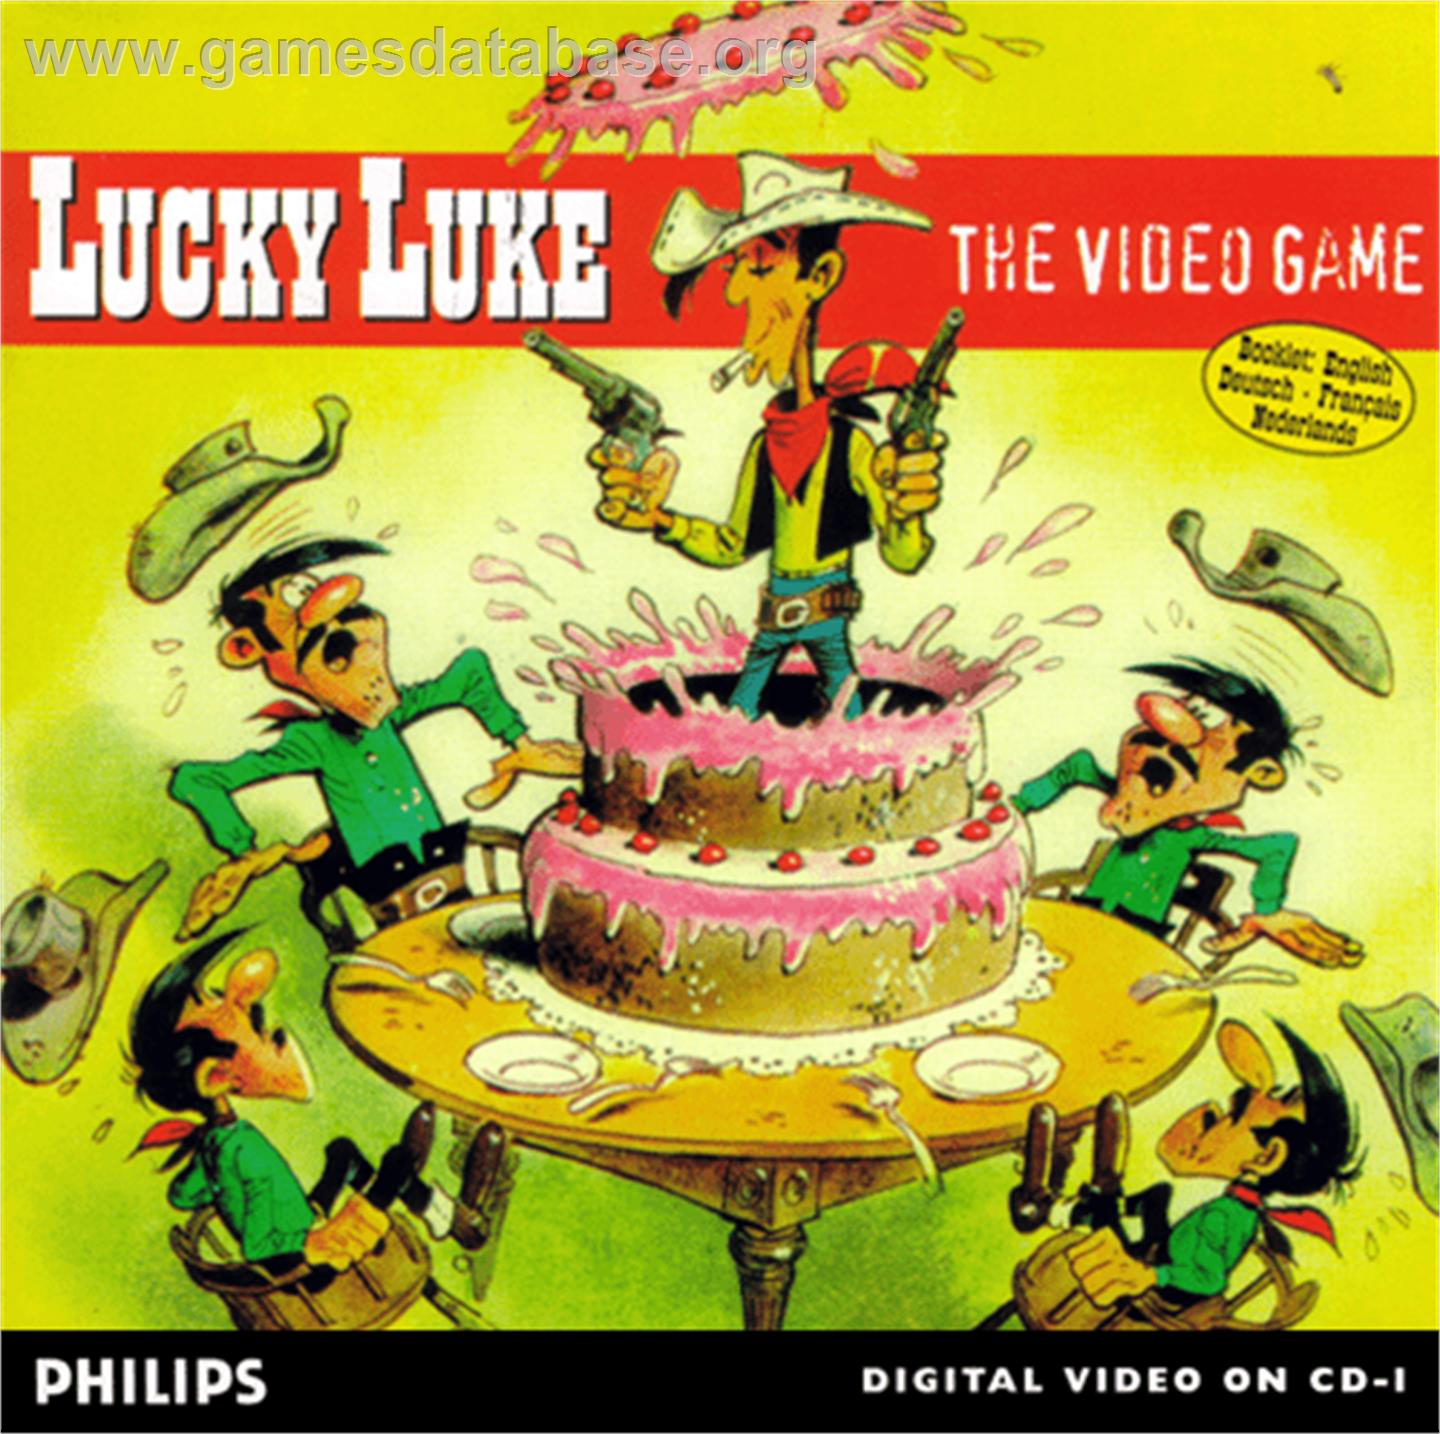 Lucky Luke: The Video Game - Philips CD-i - Artwork - Box